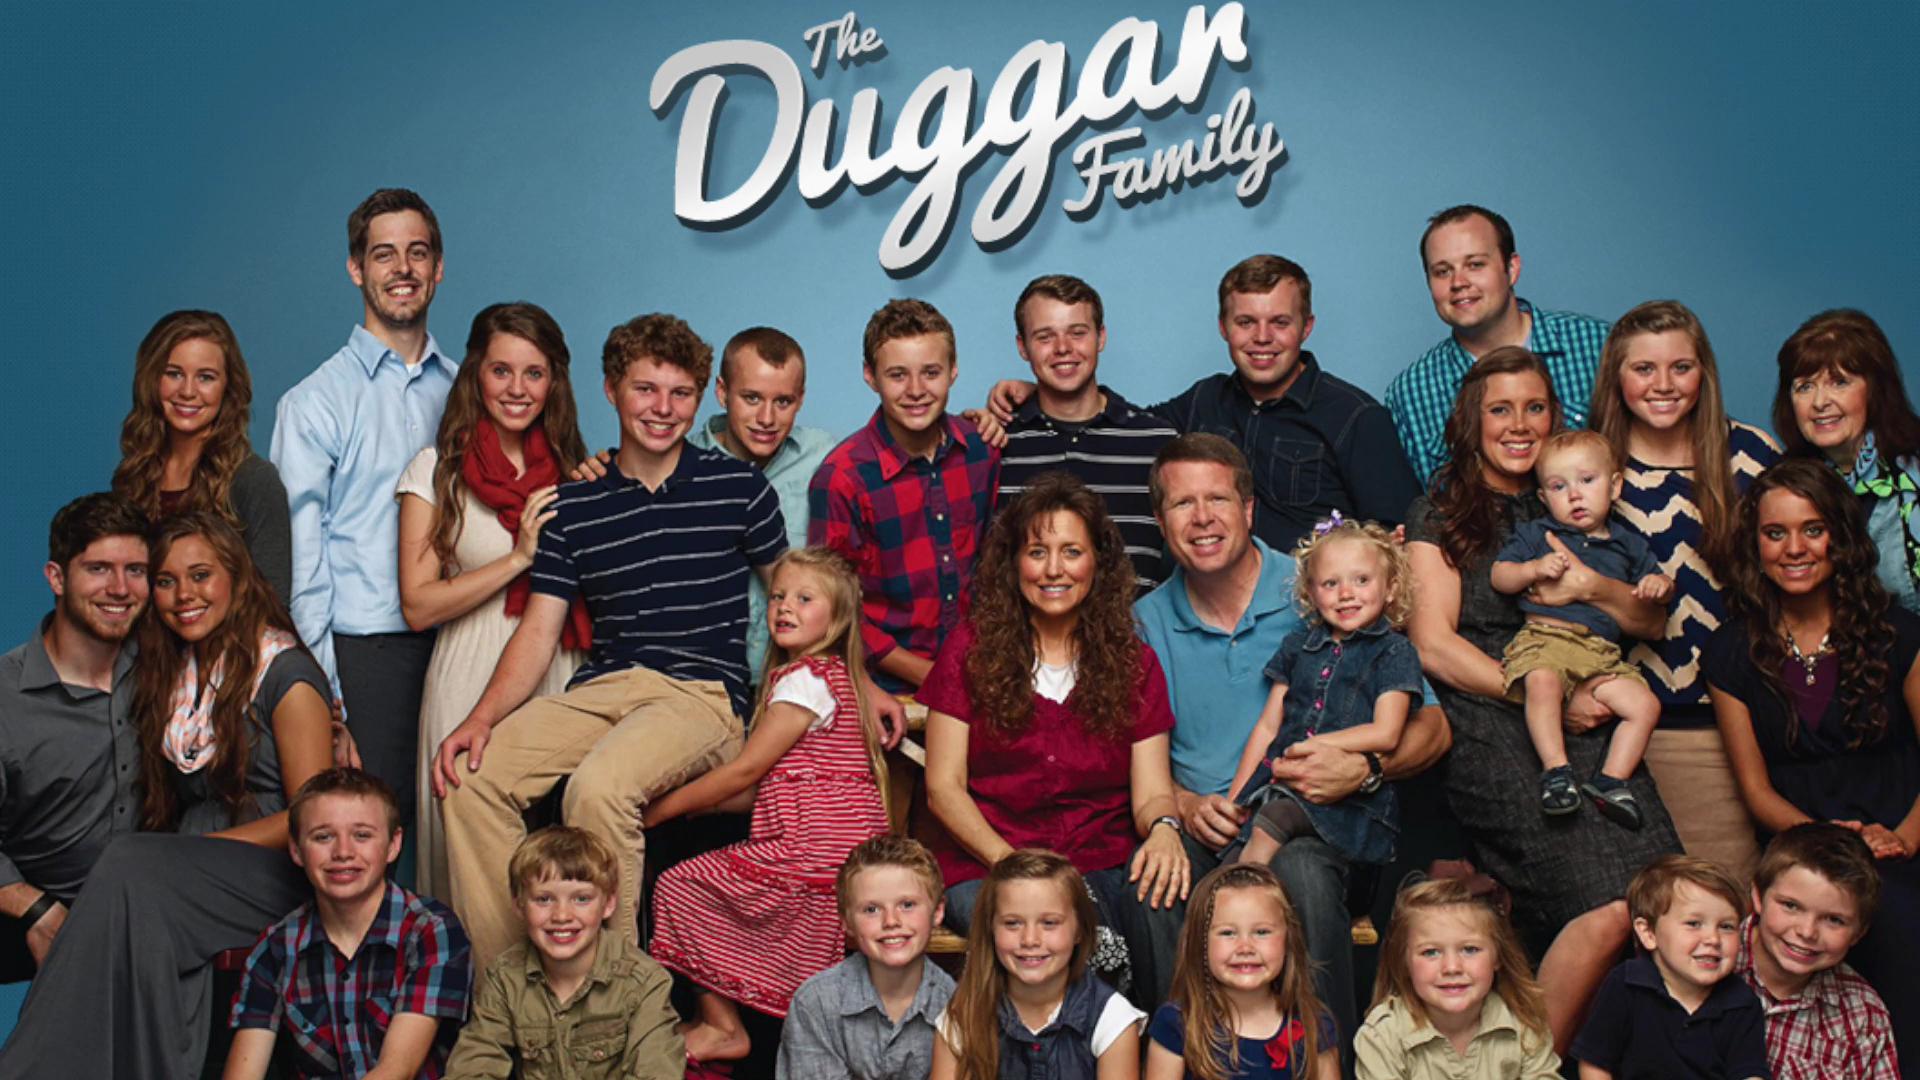 Duggar's family